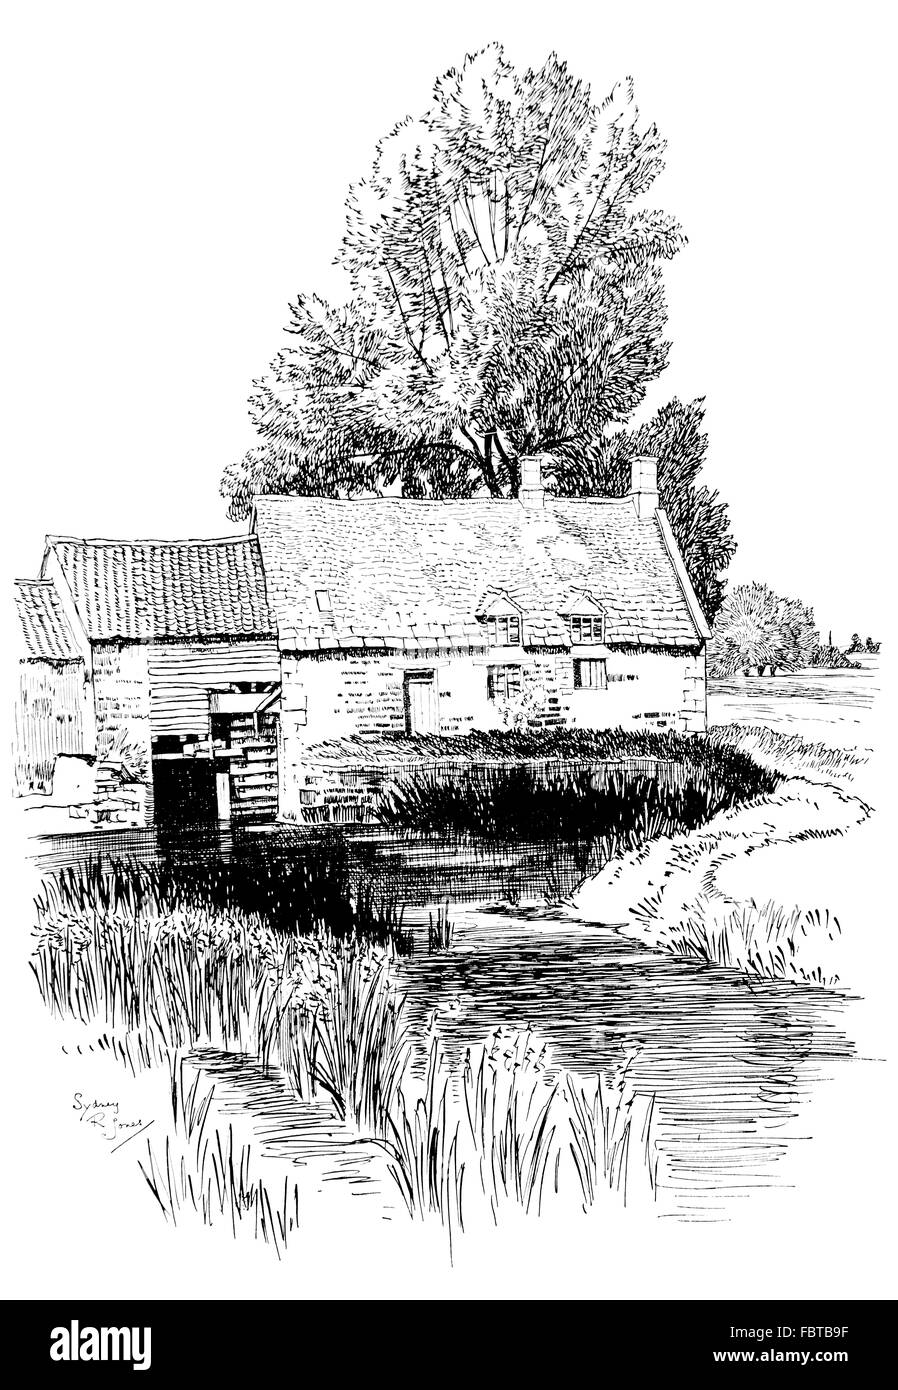 Regno Unito, Inghilterra, Rutland, Lyddington, mulino ad acqua nel 1911, illustrazione di linea da, Sydney R Jones, dallo Studio Magazine Foto Stock